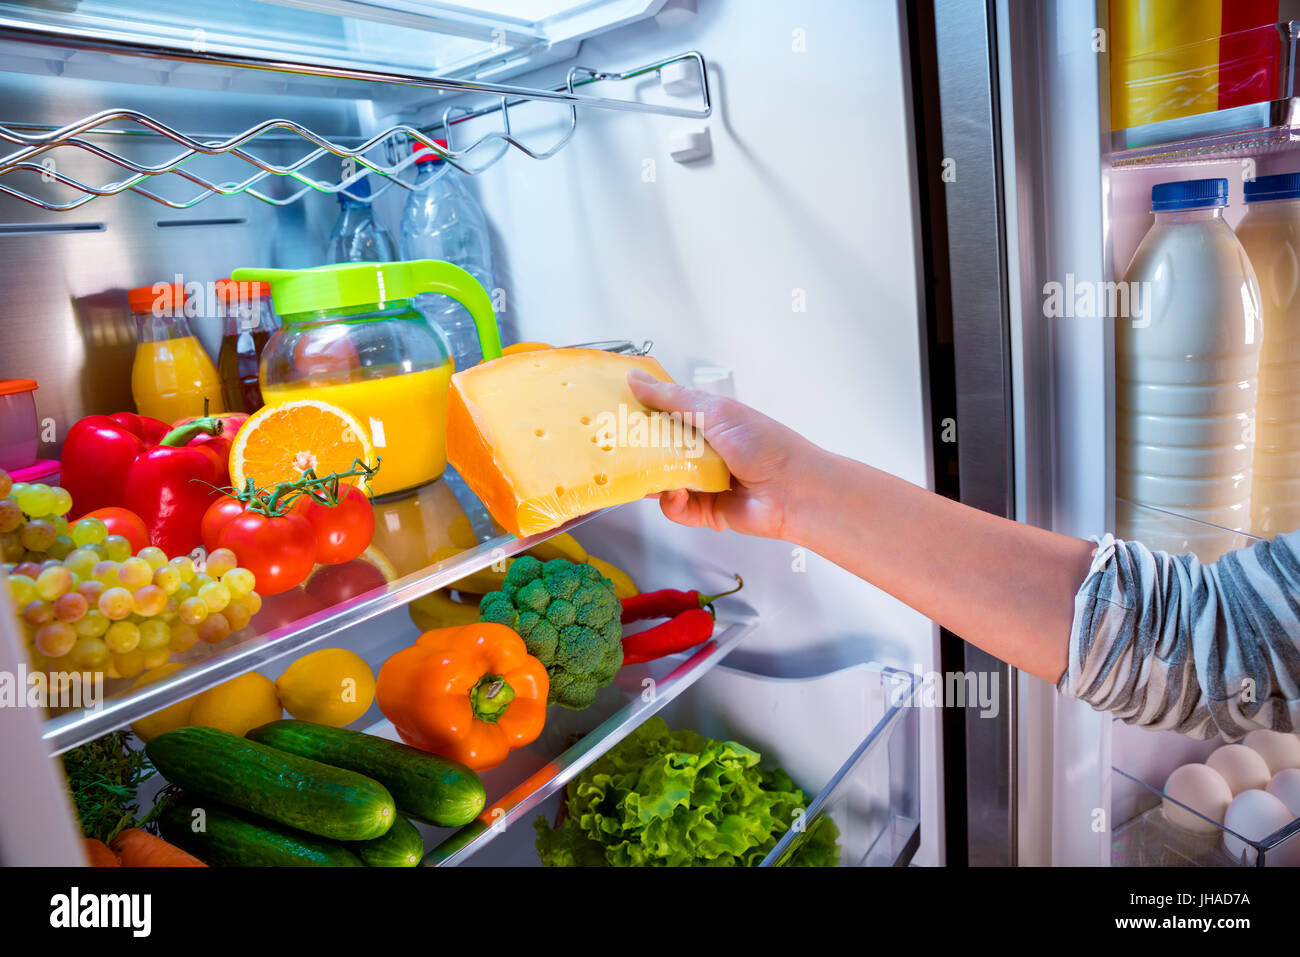 В холодильнике есть мясо. Холодильник с продуктами. Холодильник с едой. Открытый холодильник с продуктами. Холодильник для овощей.